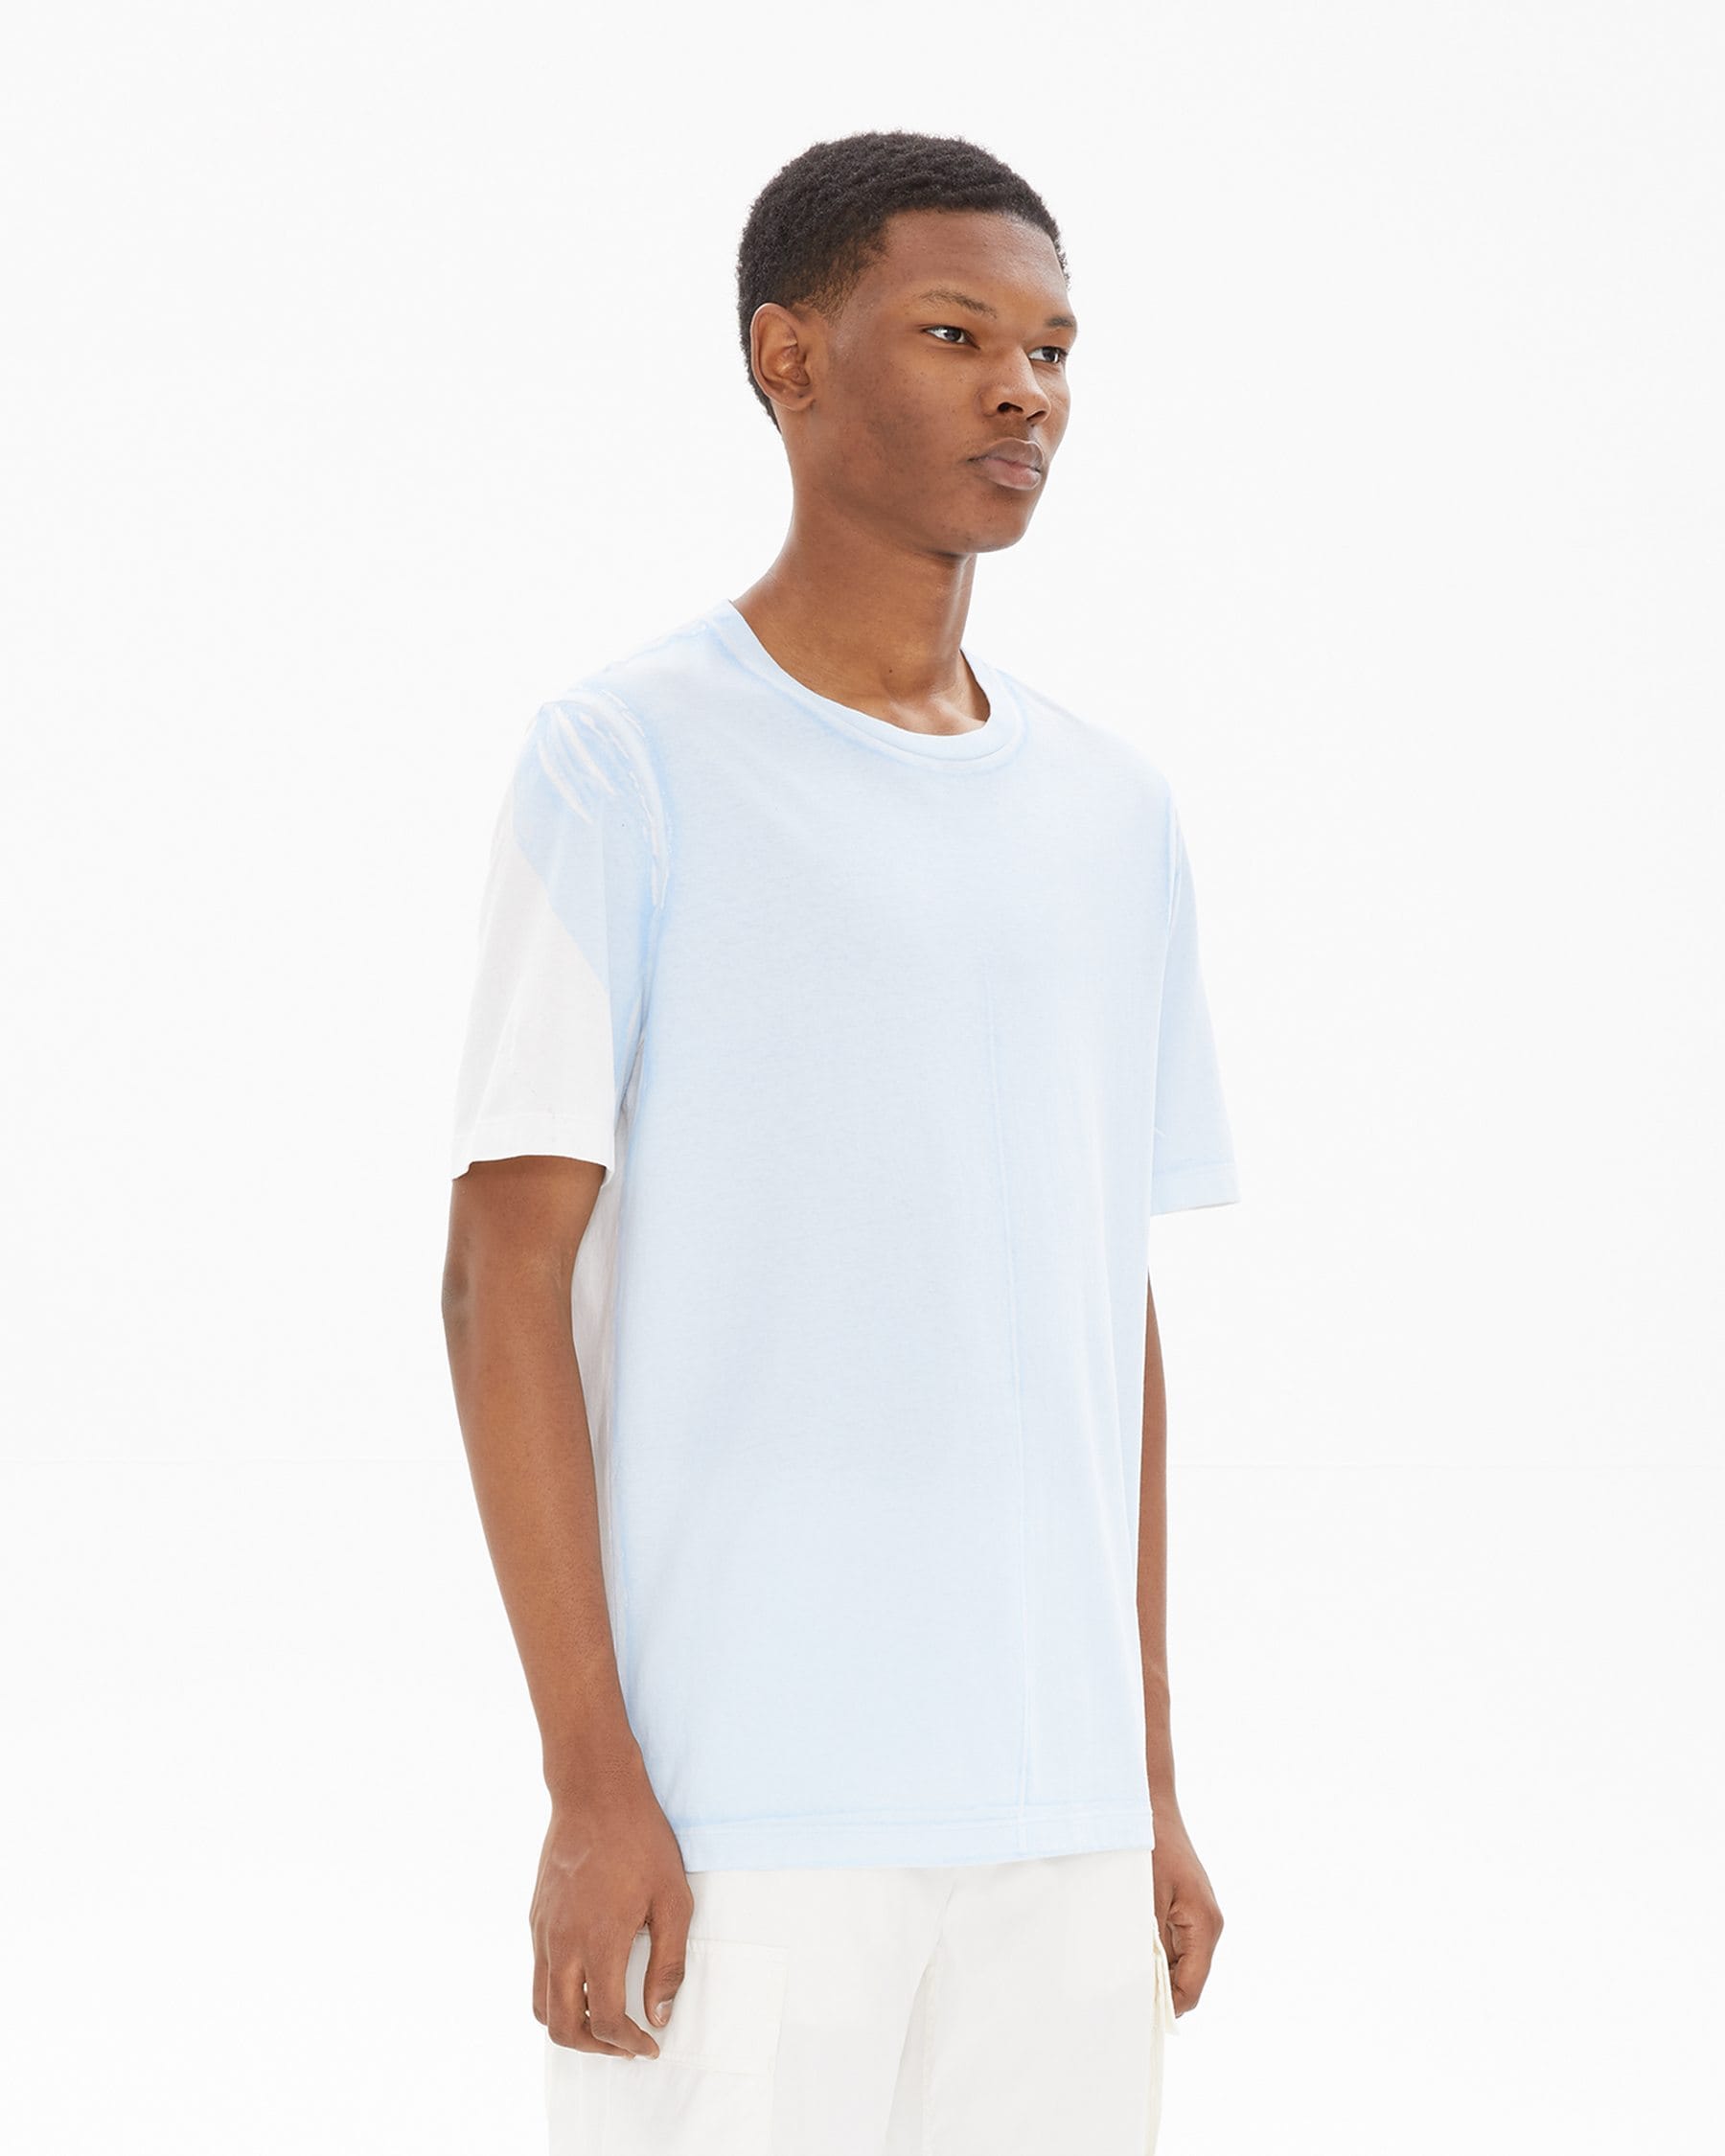 Helmut Lang White/Sky Square Short Sleeve T-Shirt | WWW.HELMUTLANG.COM